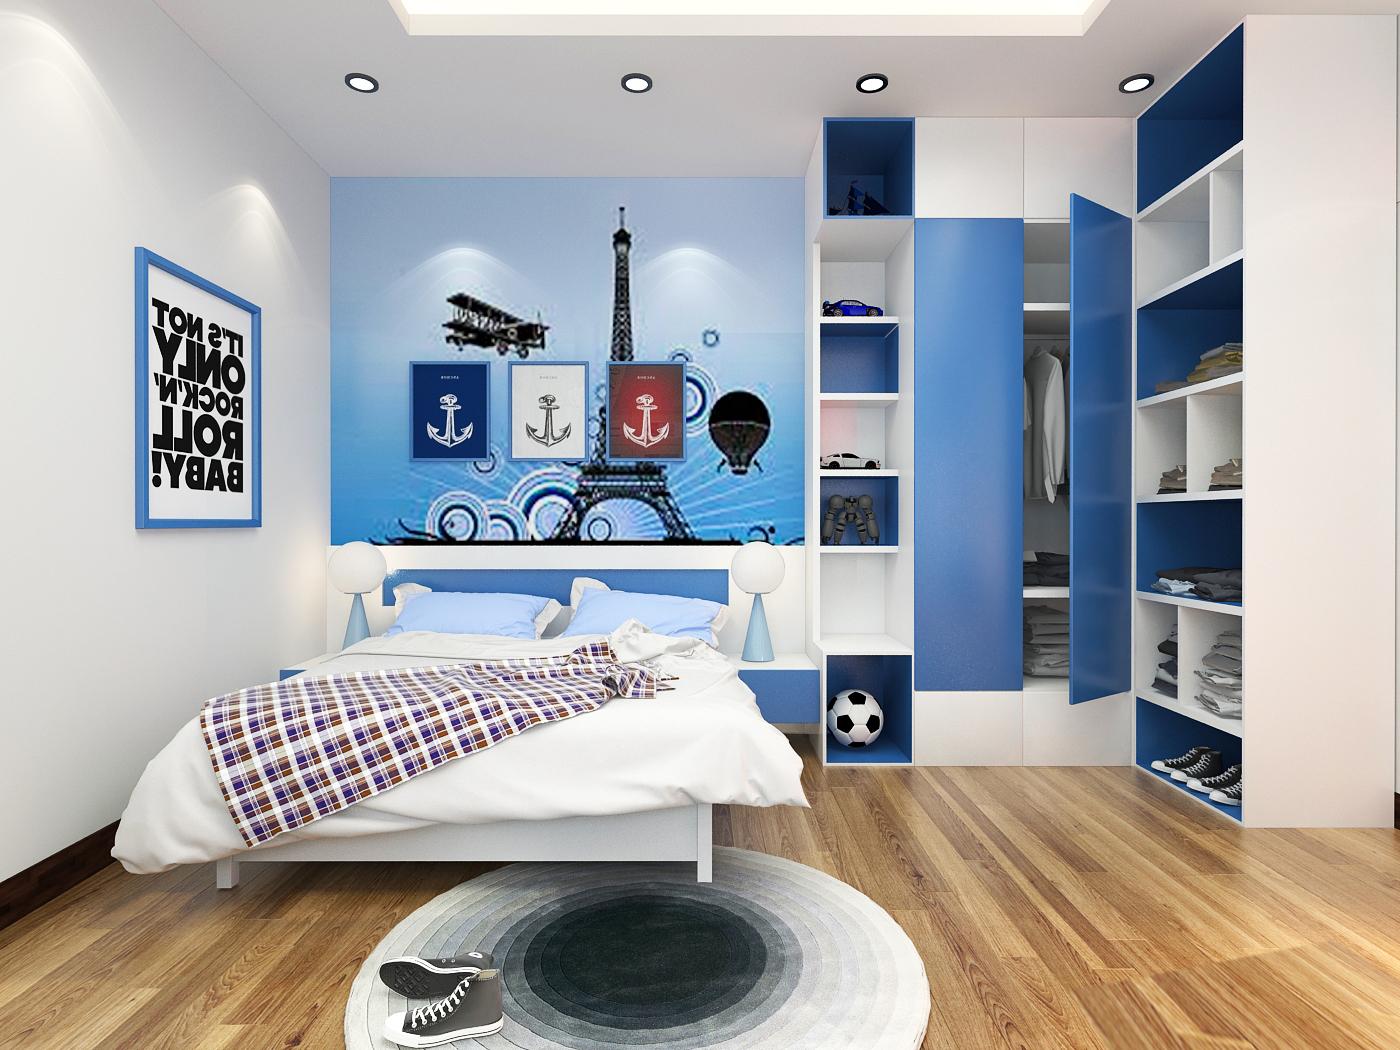 Phòng ngủ của cậu con trai lớn được thiết kế và bài trí theo sở thích của trẻ với sắc xanh dương nhẹ nhàng, tươi mát, trẻ trung.